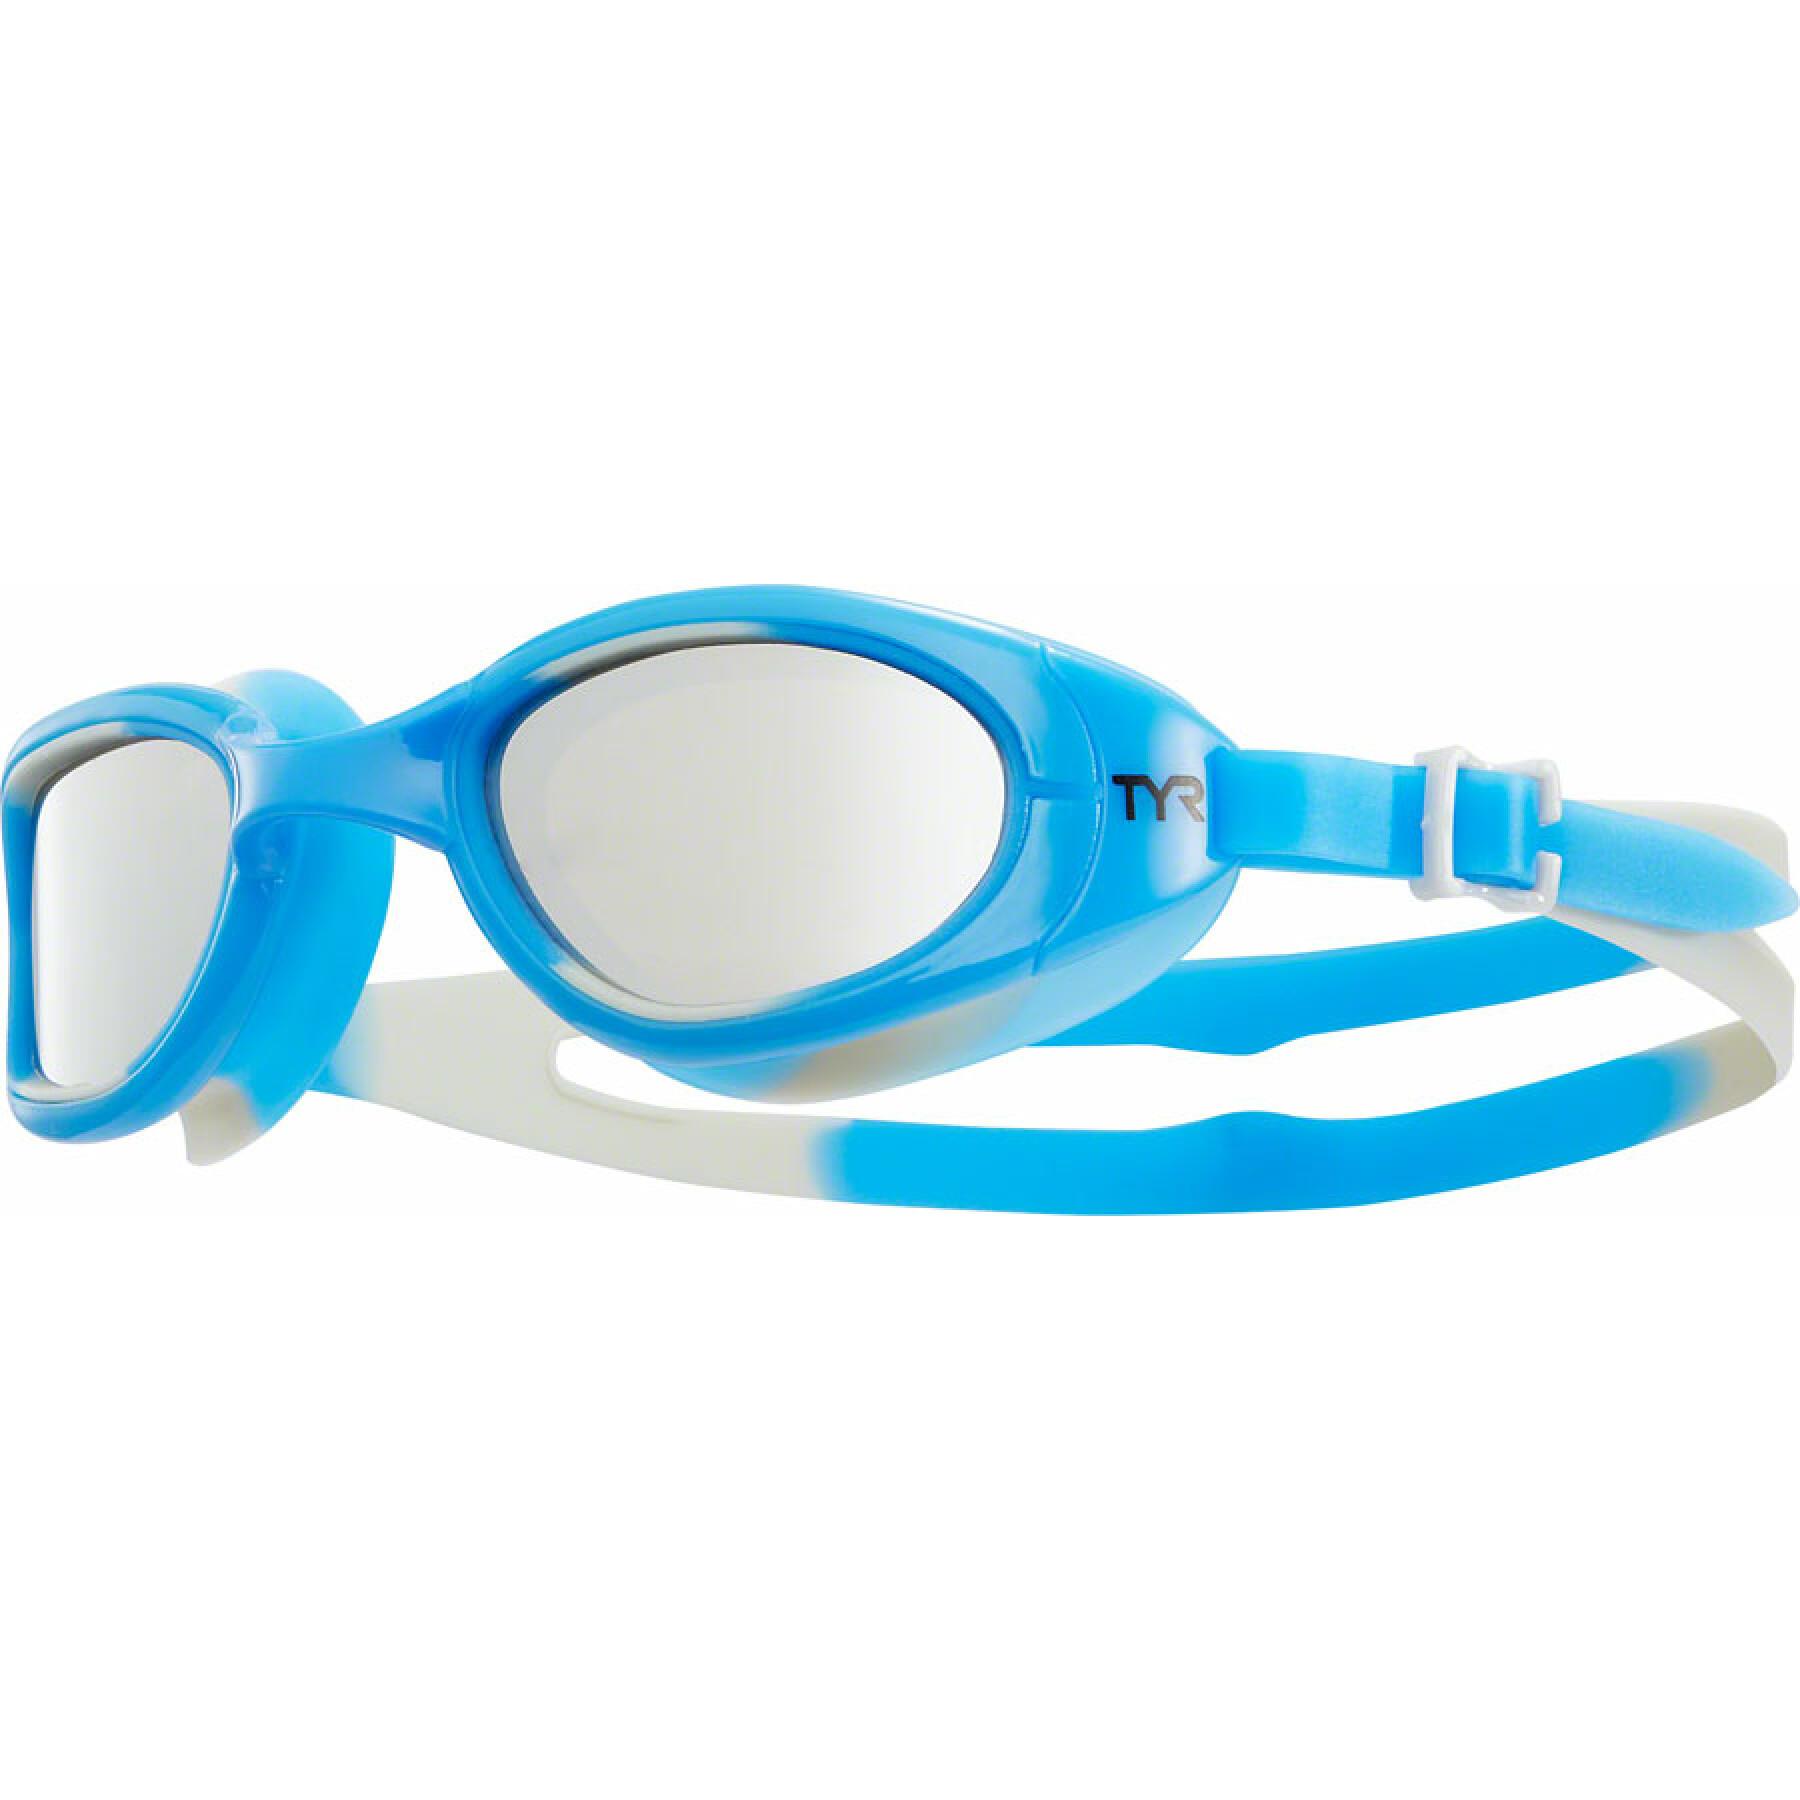 Gafas de natación TYR special ops 2.0 polarized